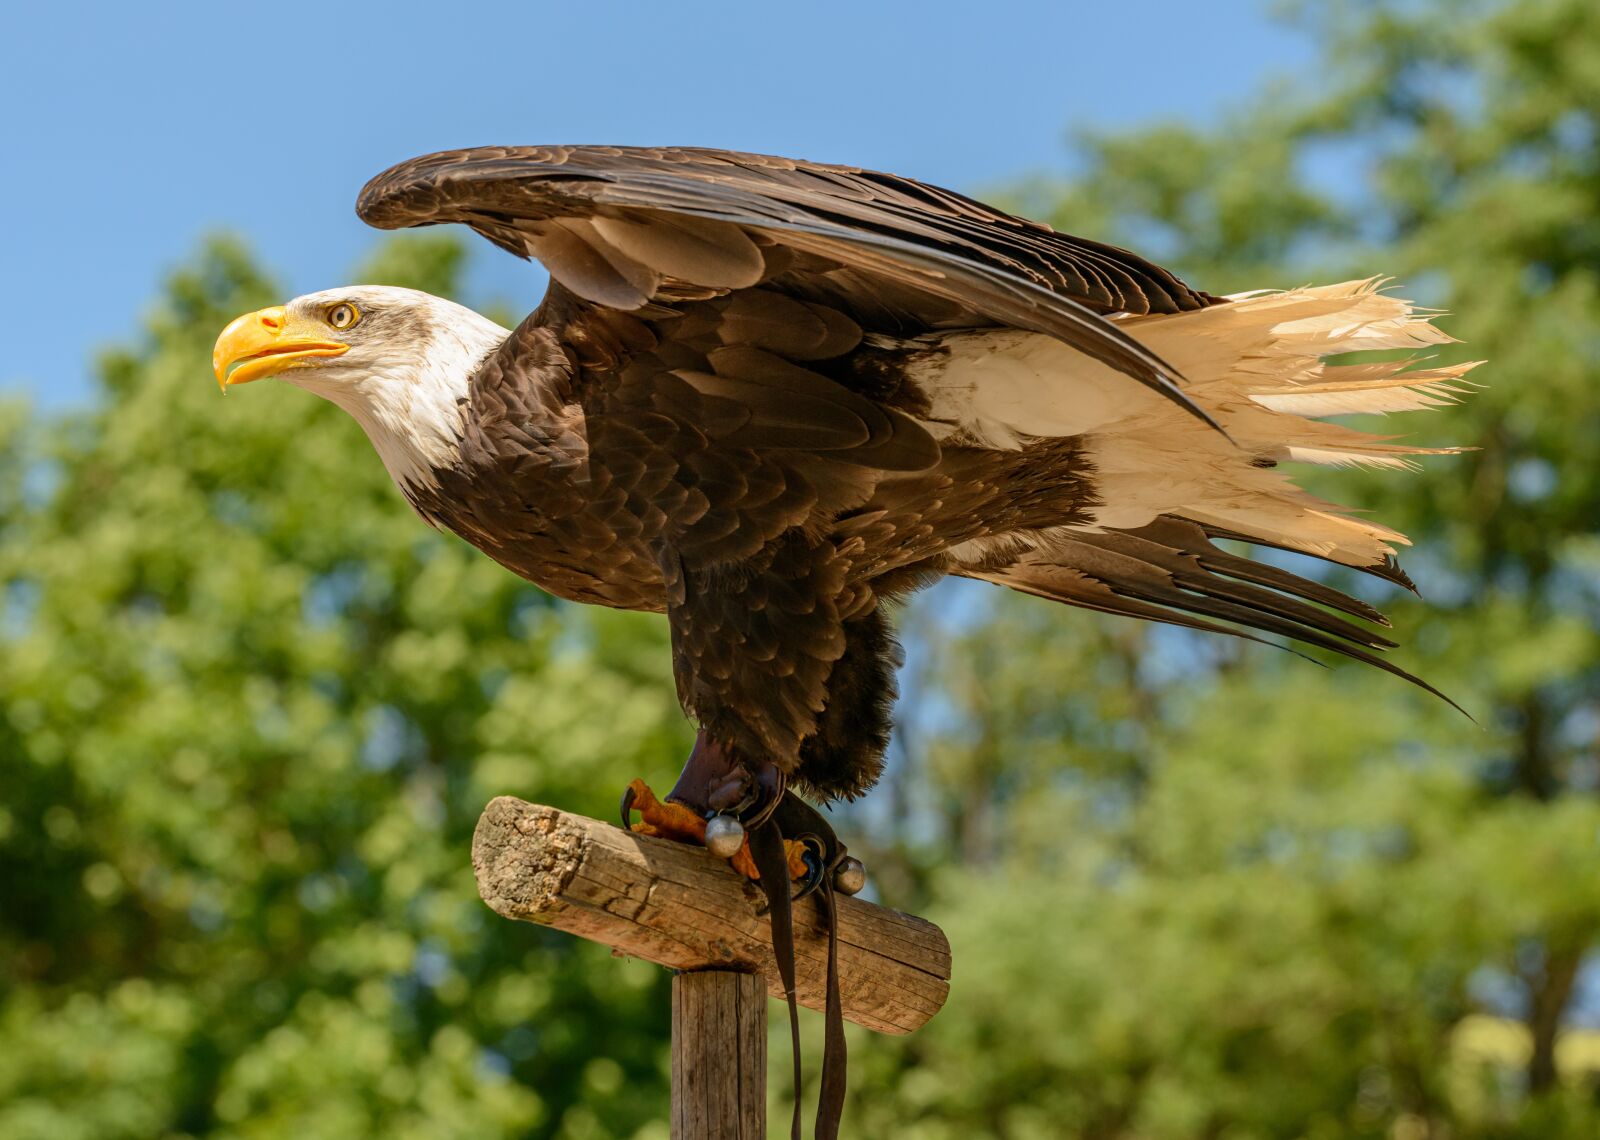 Nikon D800E sample photo. Eagle, bird, predator photography